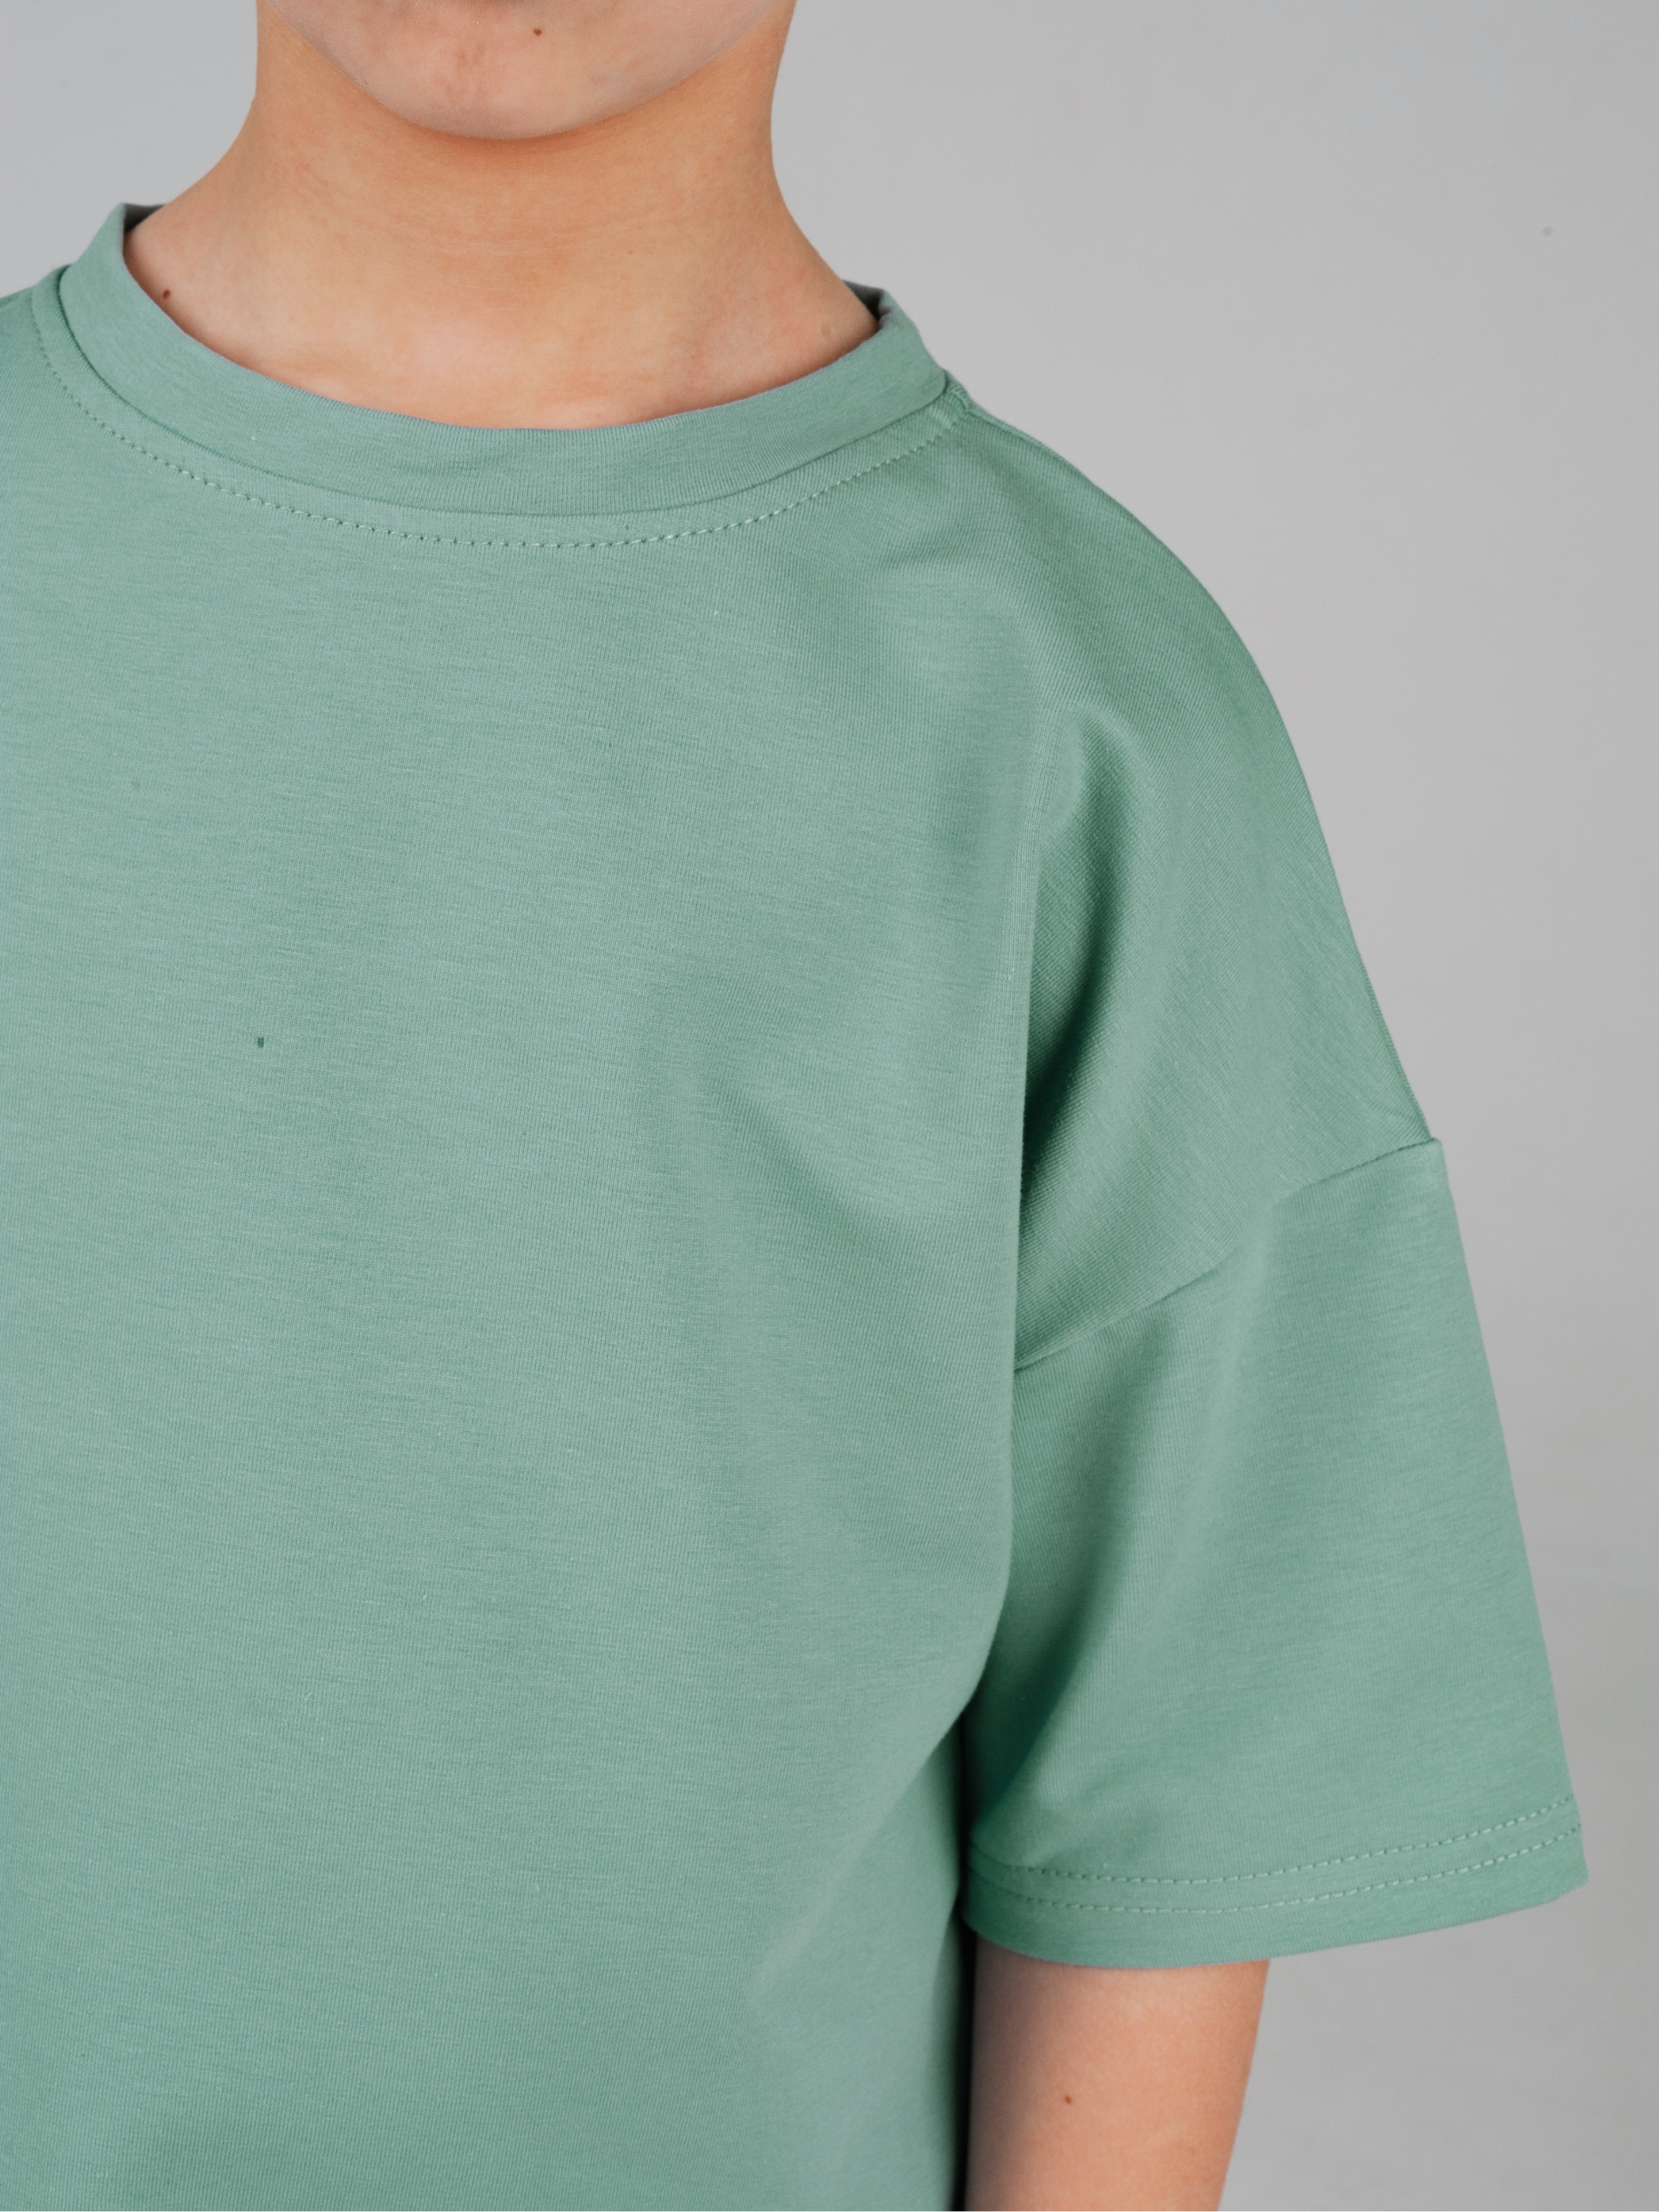 Футболка и шорты Cottonstory 250422-шорты/футболка/оверсйзDG-светло-зеленый - фото 11